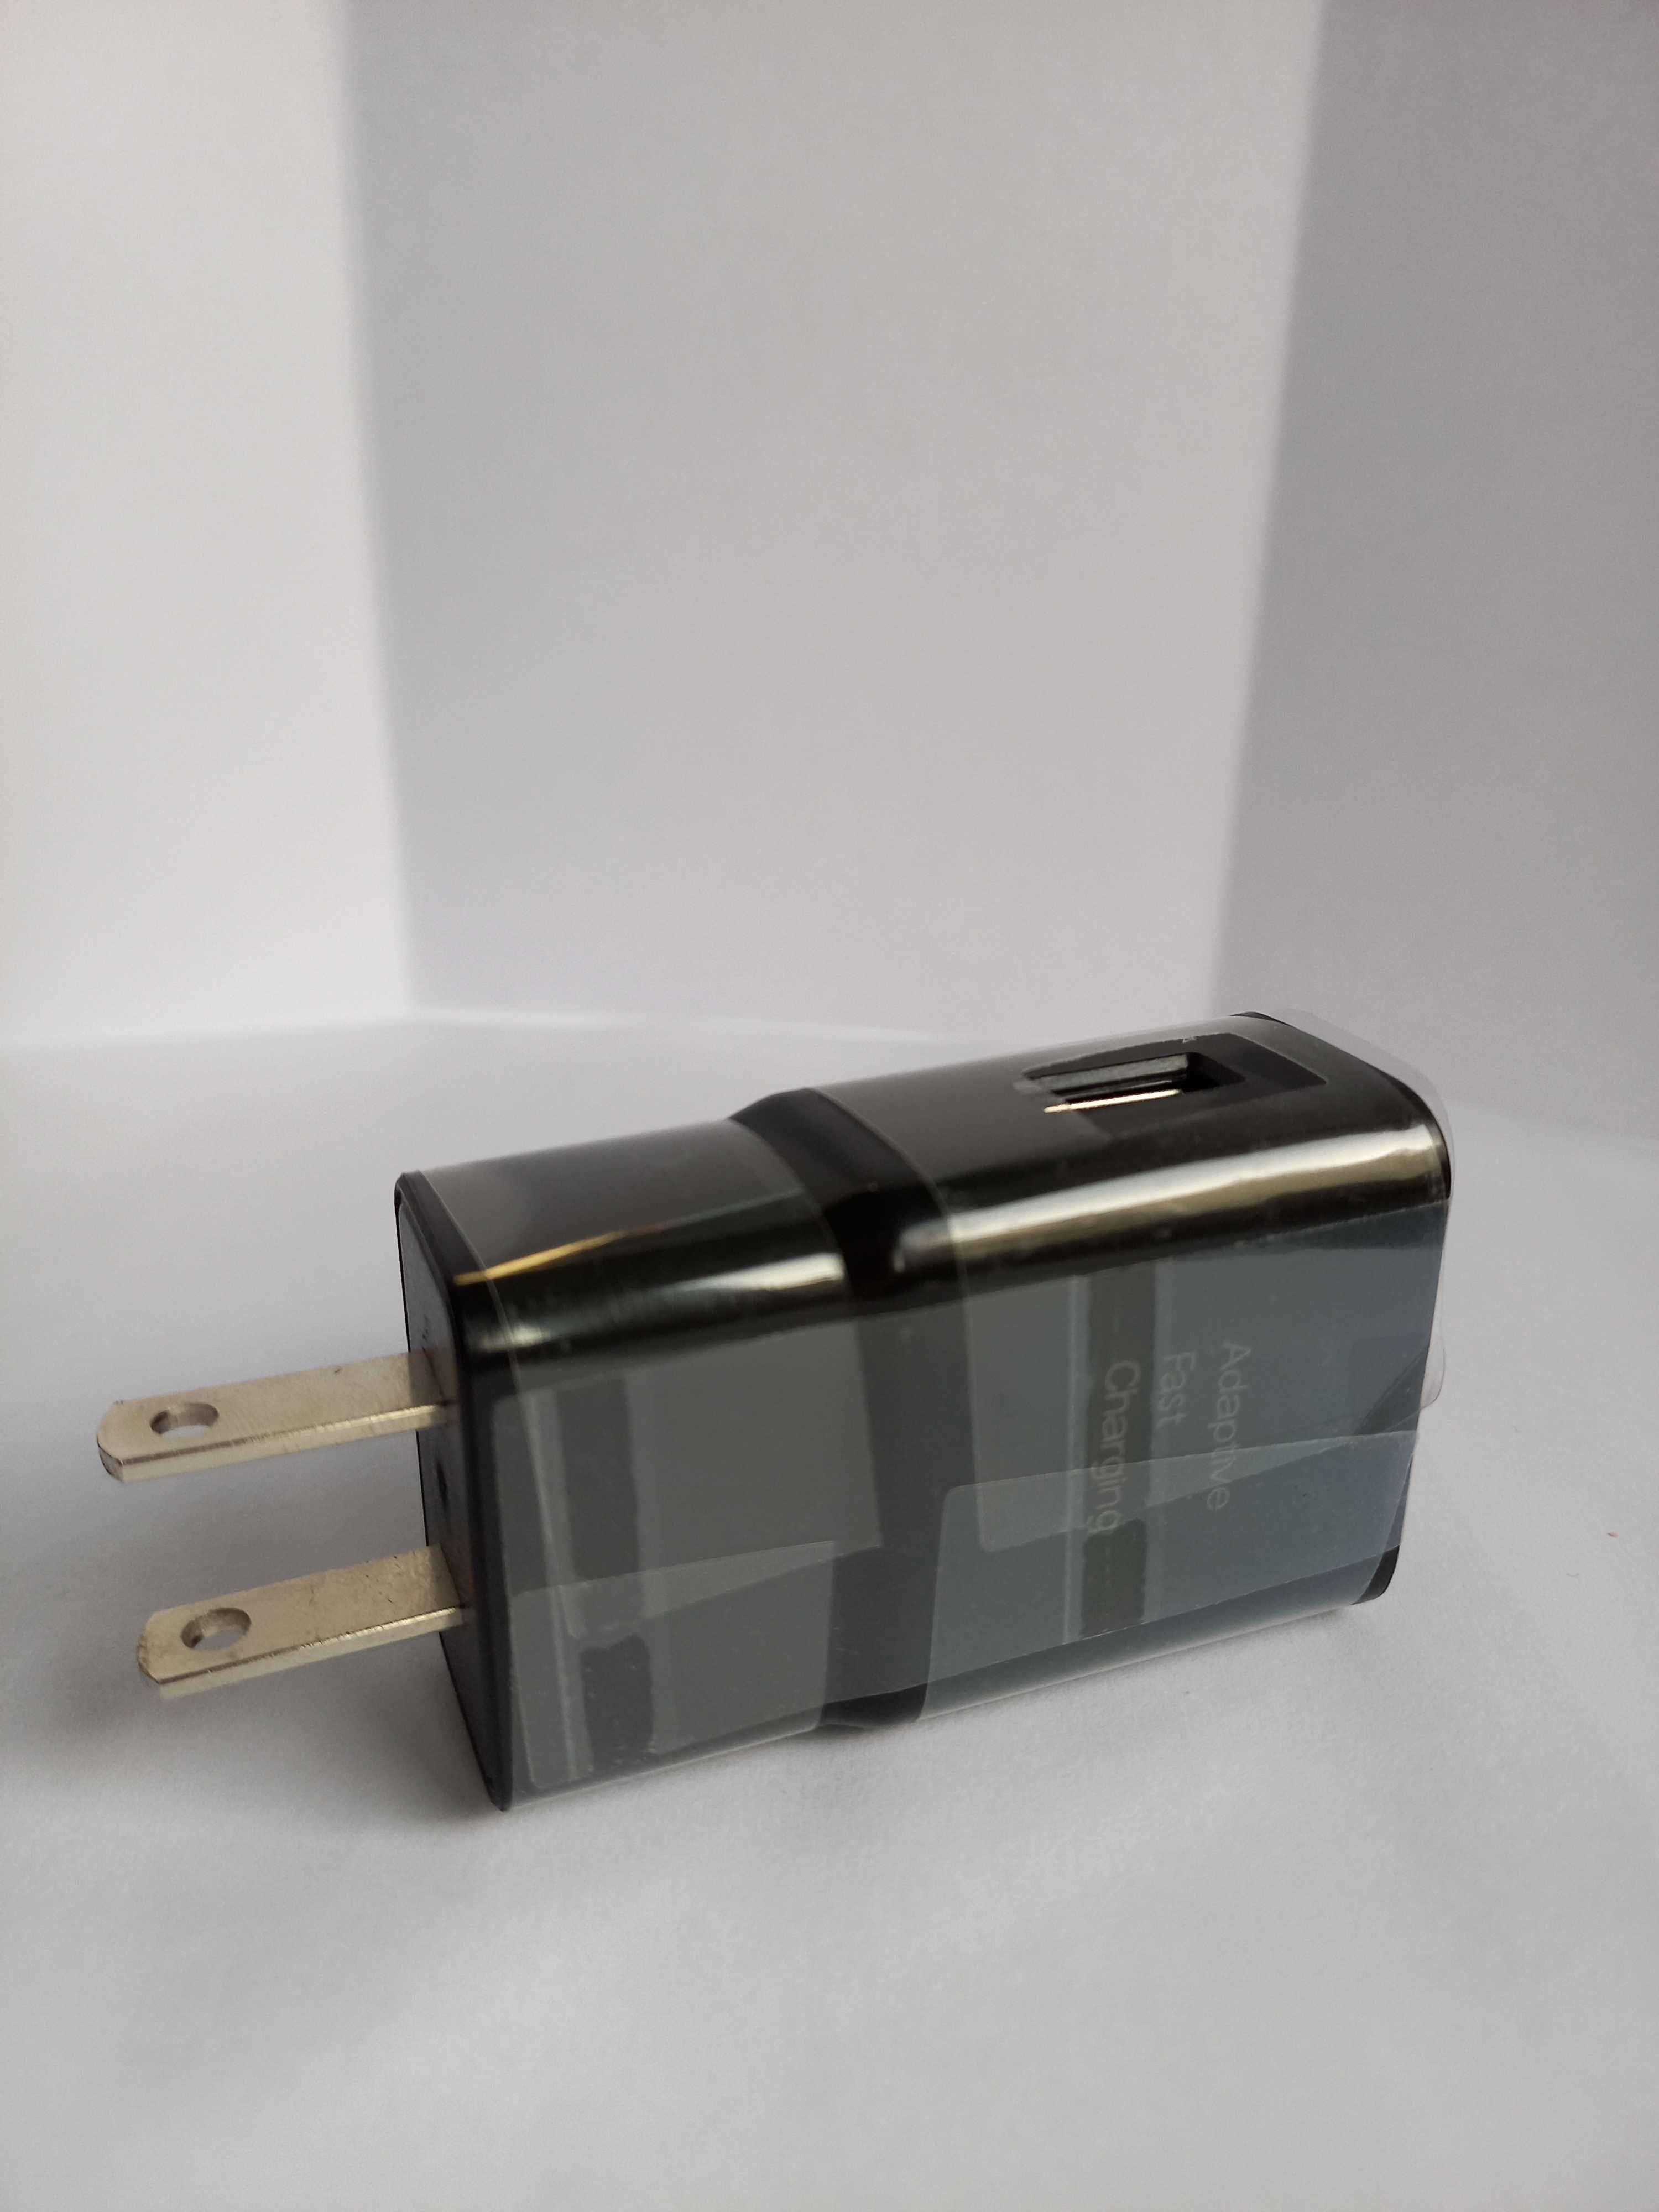 Carregador USB para aparelhos portáteis (Portes PAGOS)